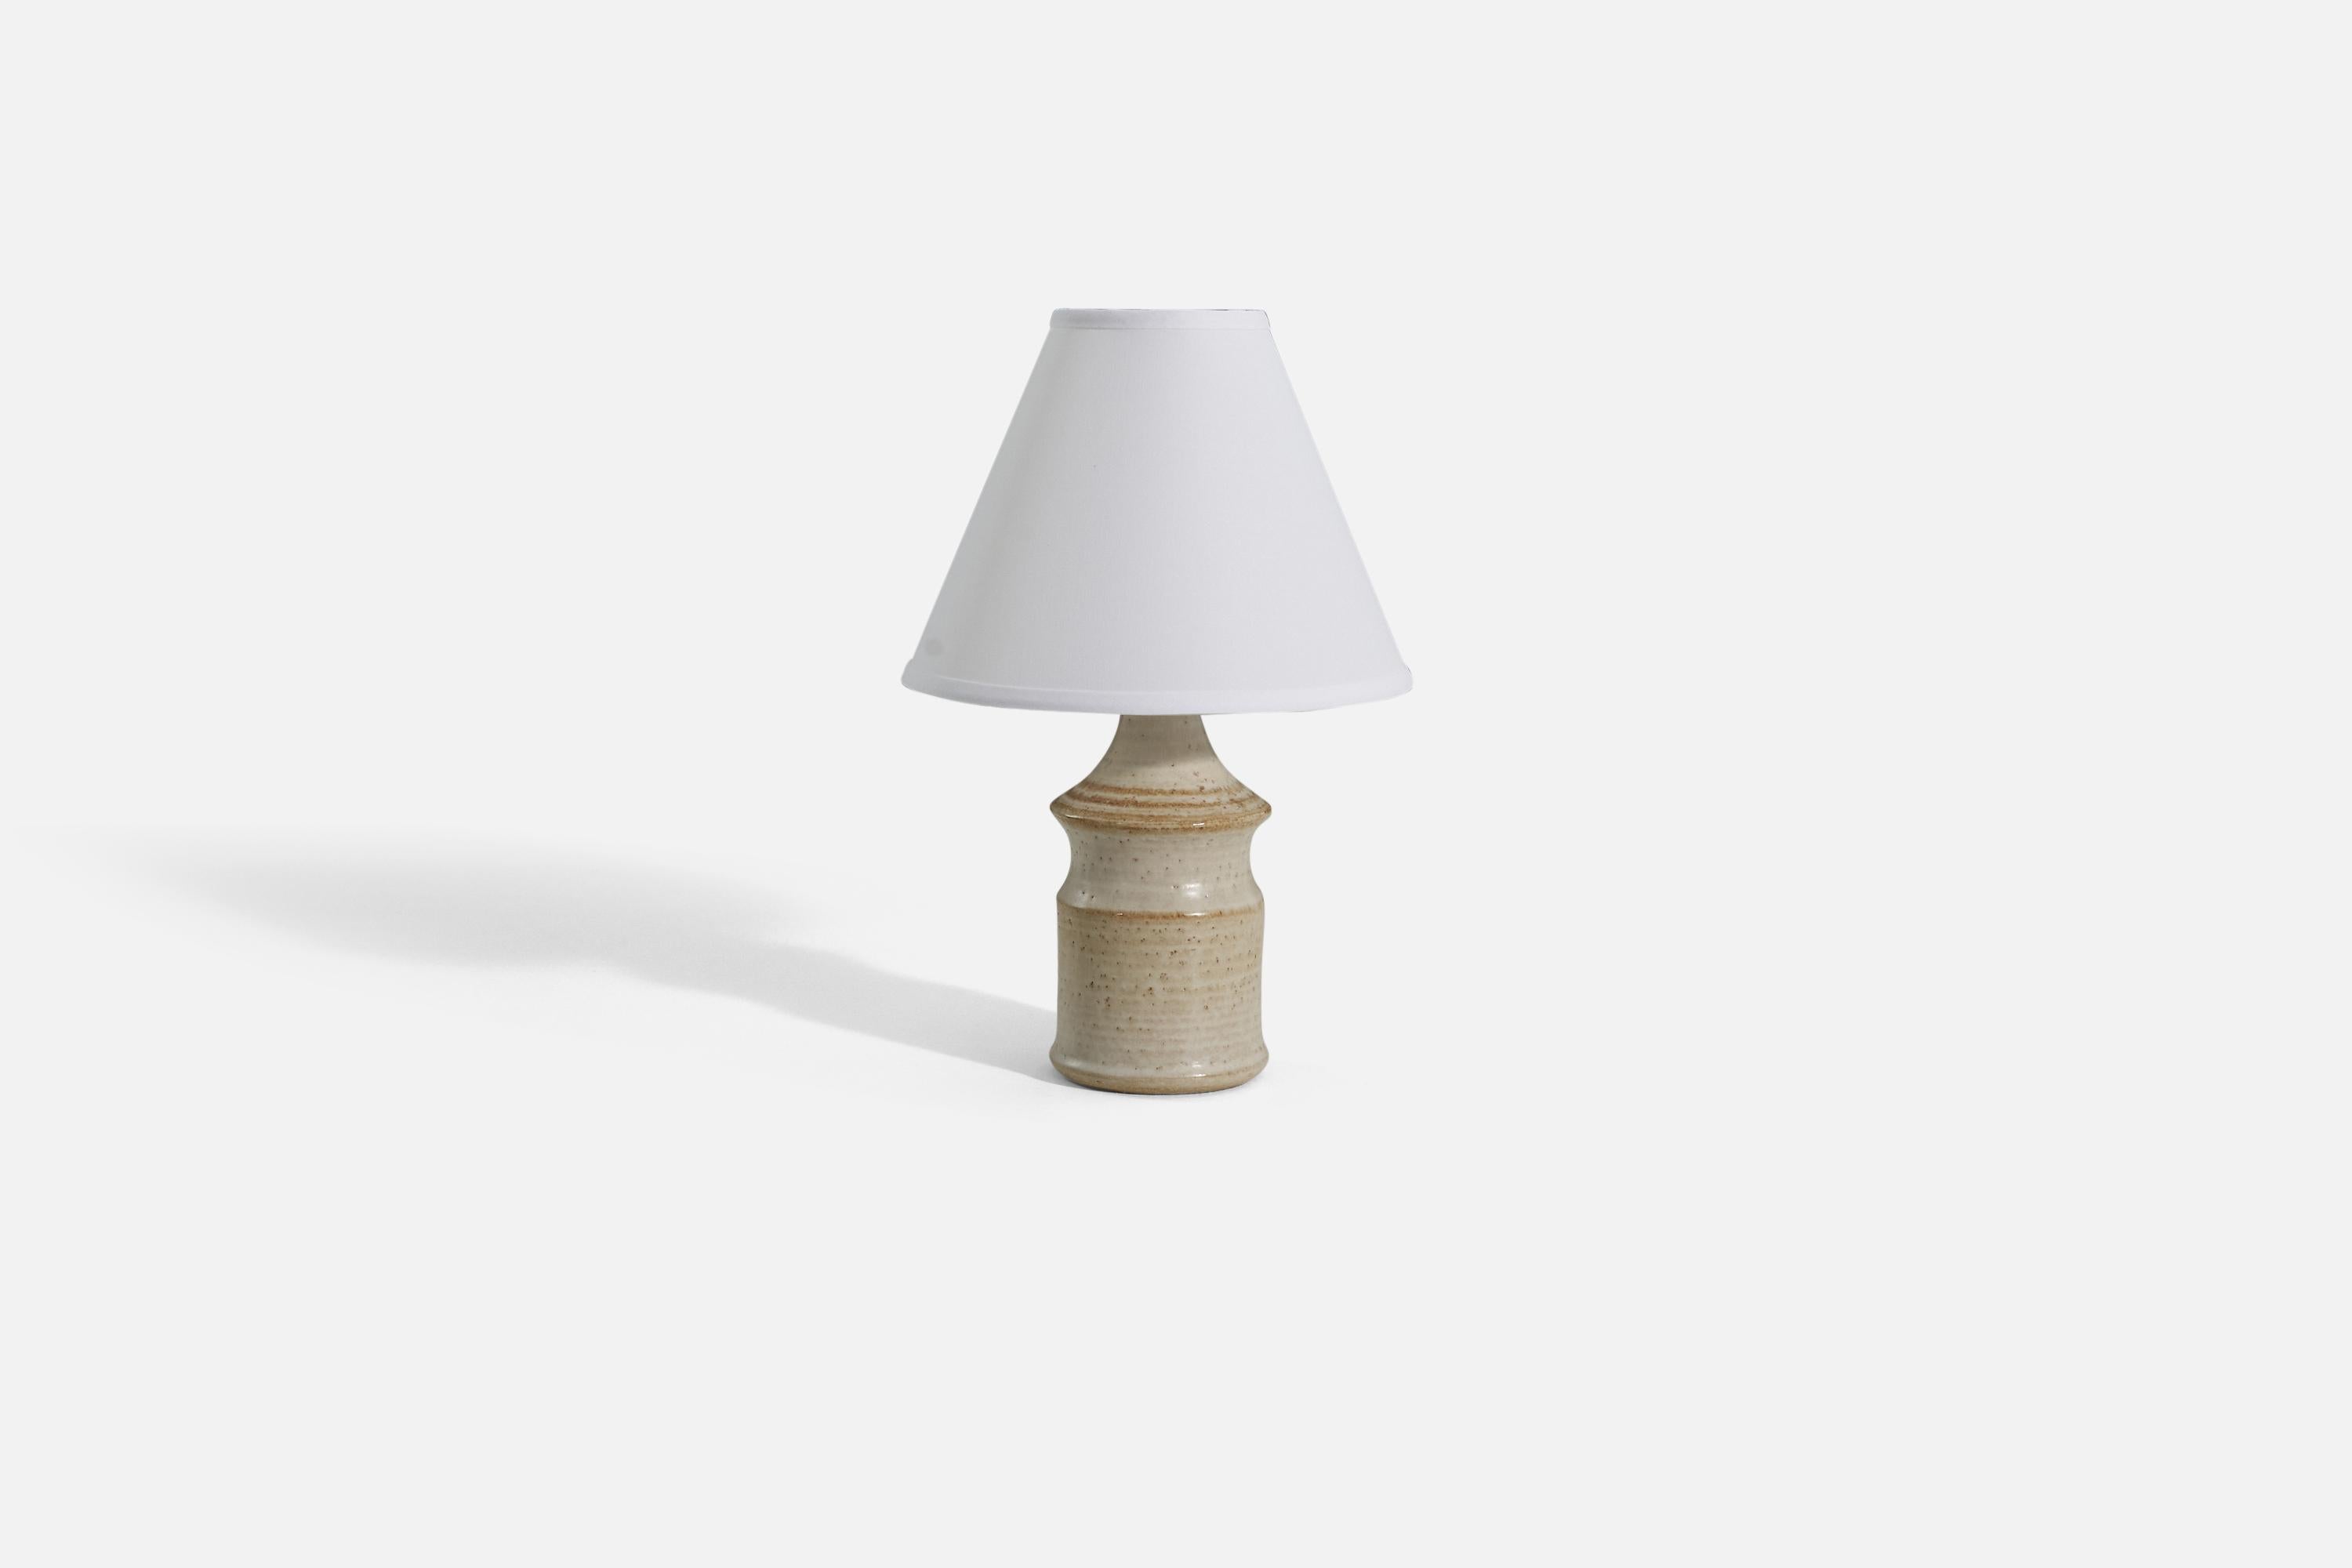 Eine cremefarbene und braun gestreifte Tischlampe, hergestellt von Søholm Keramik auf der Insel Bornholm in Dänemark. 

Verkauft ohne Lampenschirm. 

Abmessungen der Lampe (Zoll) : 12 x 4,5 x 4,5 (H x B x T)
Abmessungen Schirm (Zoll) : 4.25 x